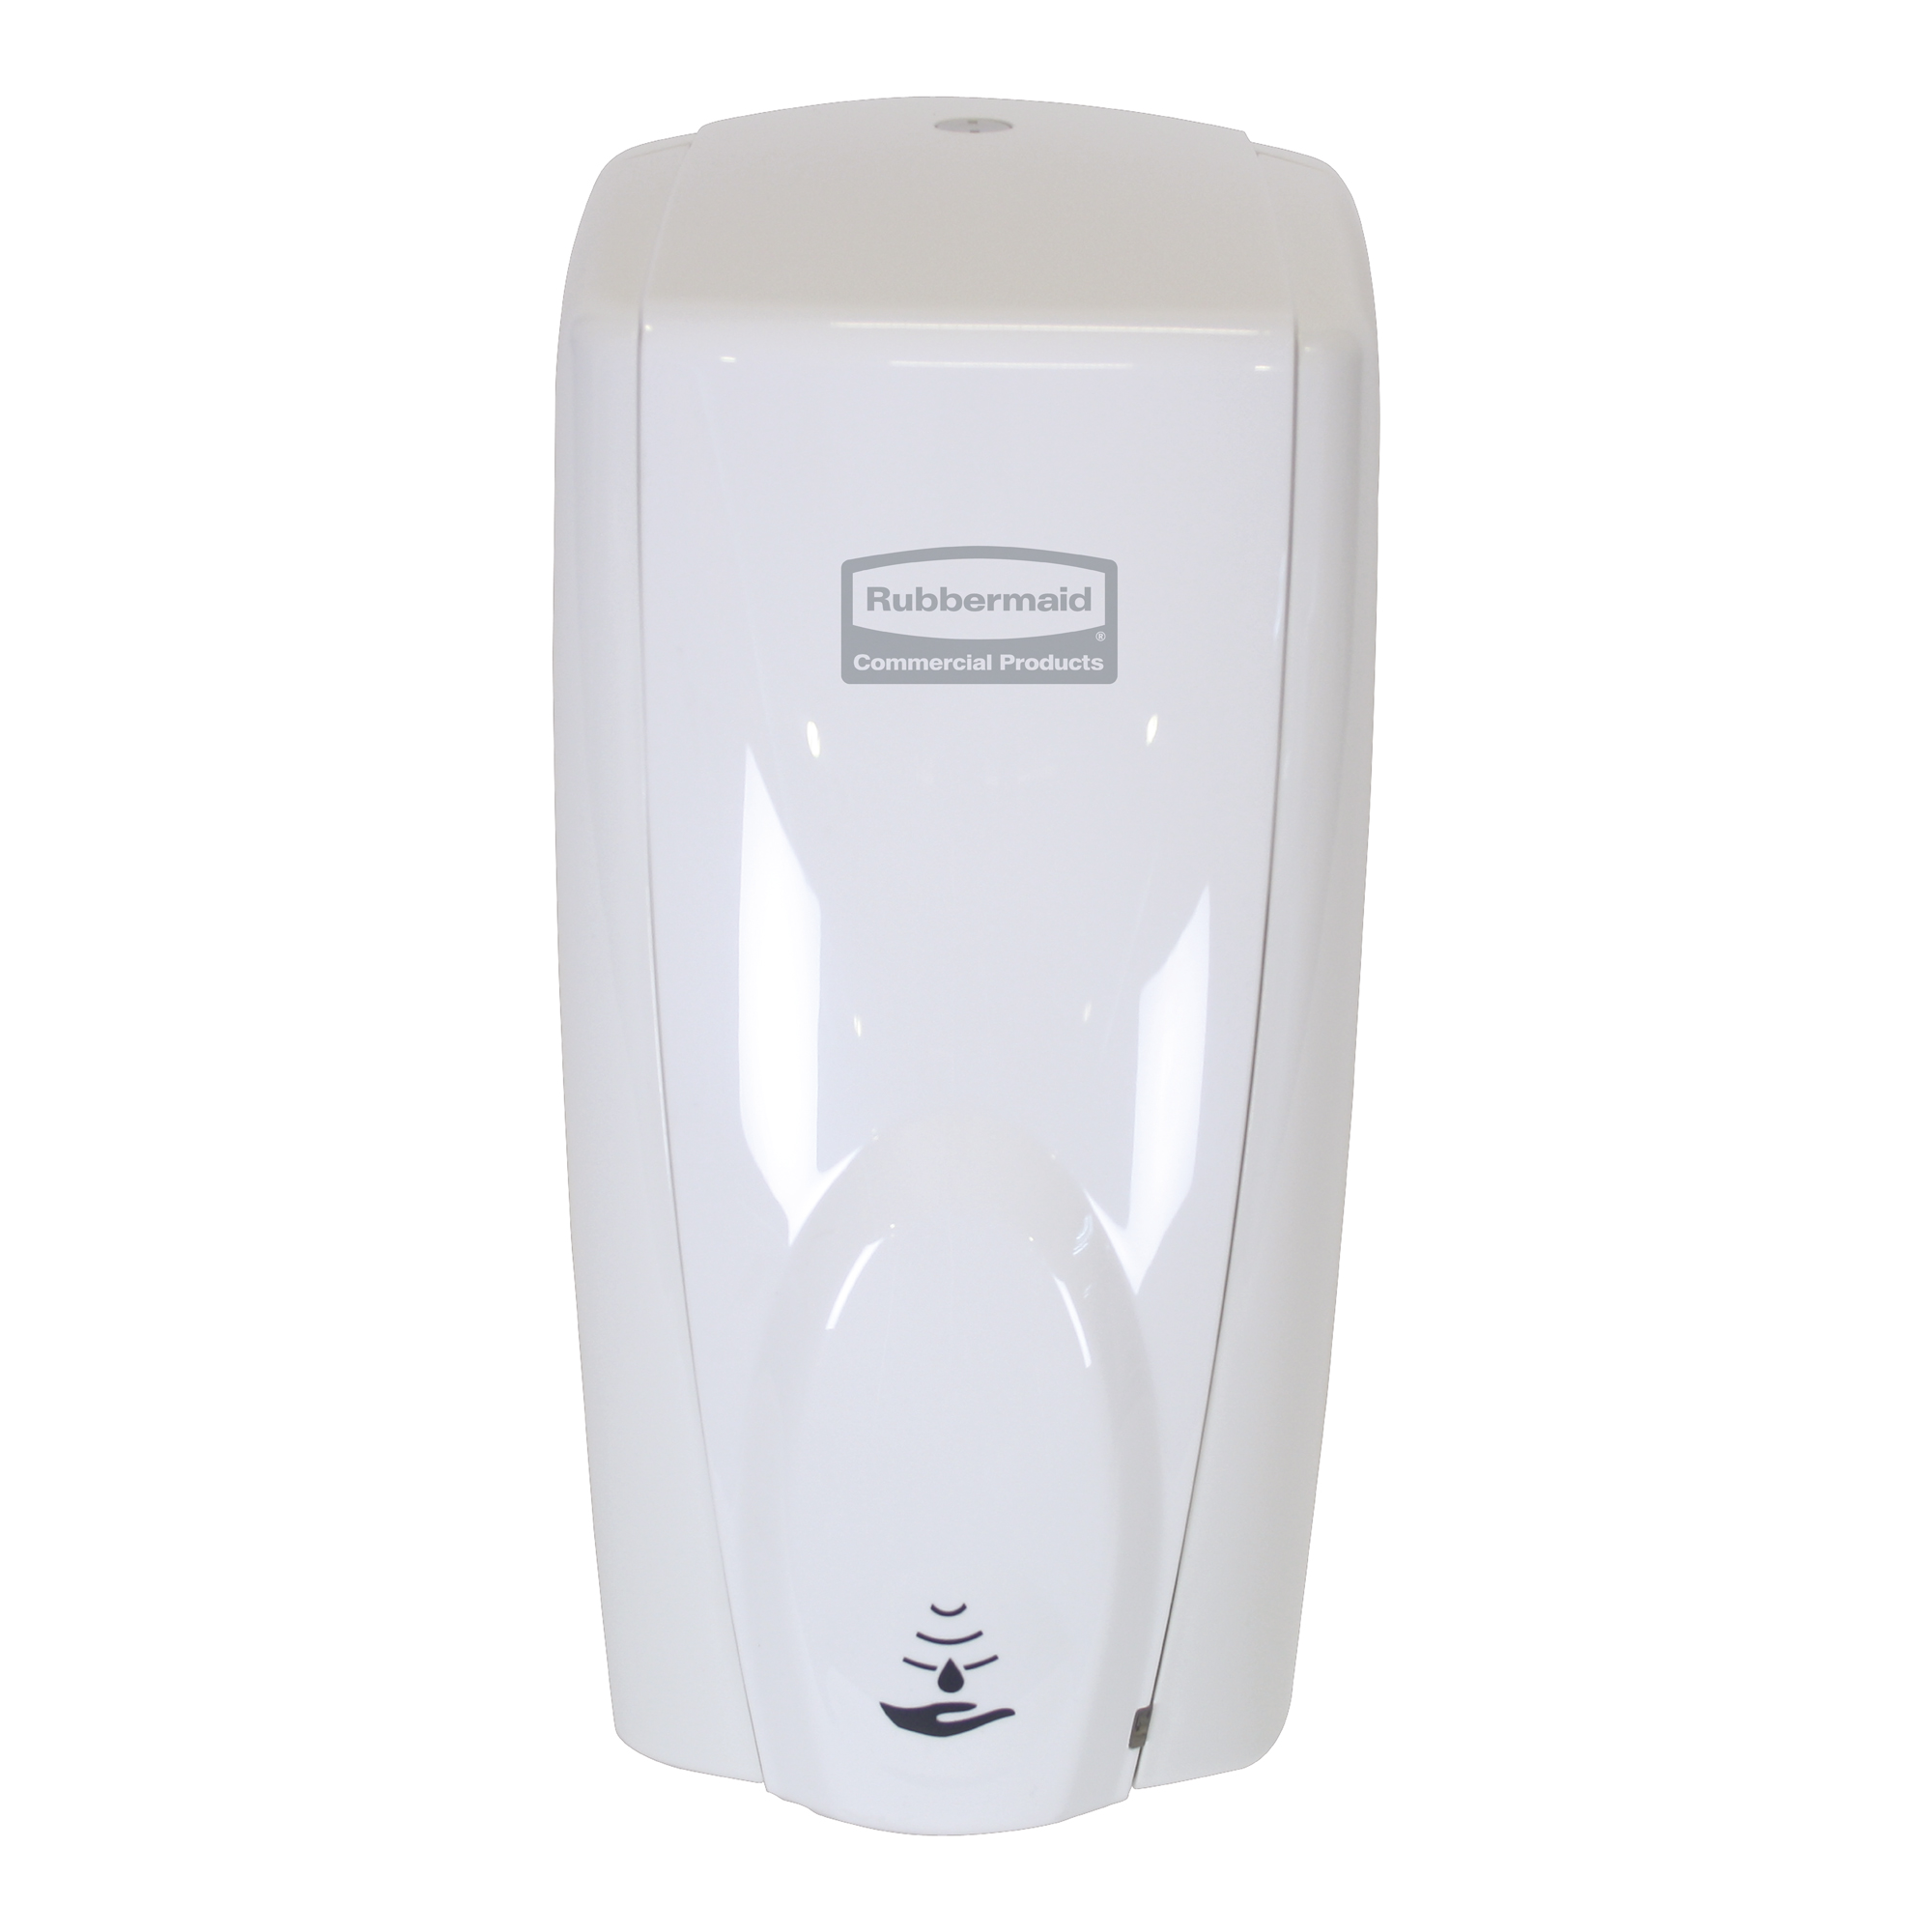 Rubbermaid AutoFoam Sensor-Schaumseifenspender & Desinfektionsspender weiß FG750412_1